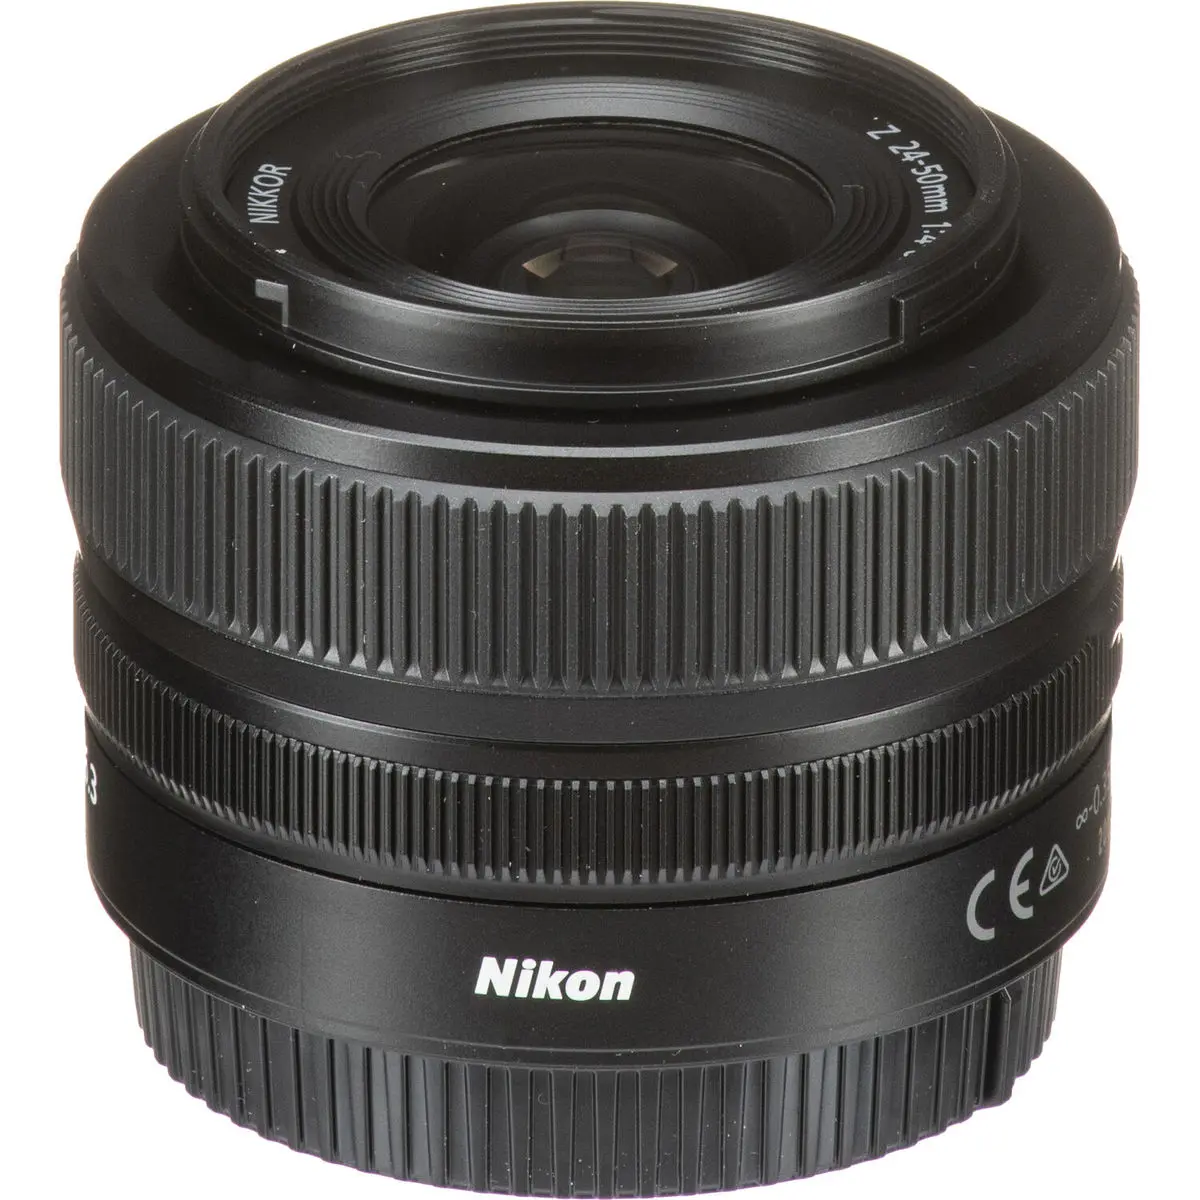 3. Nikon NIKKOR Z 24-50MM F/4-6.3 (kit lens)